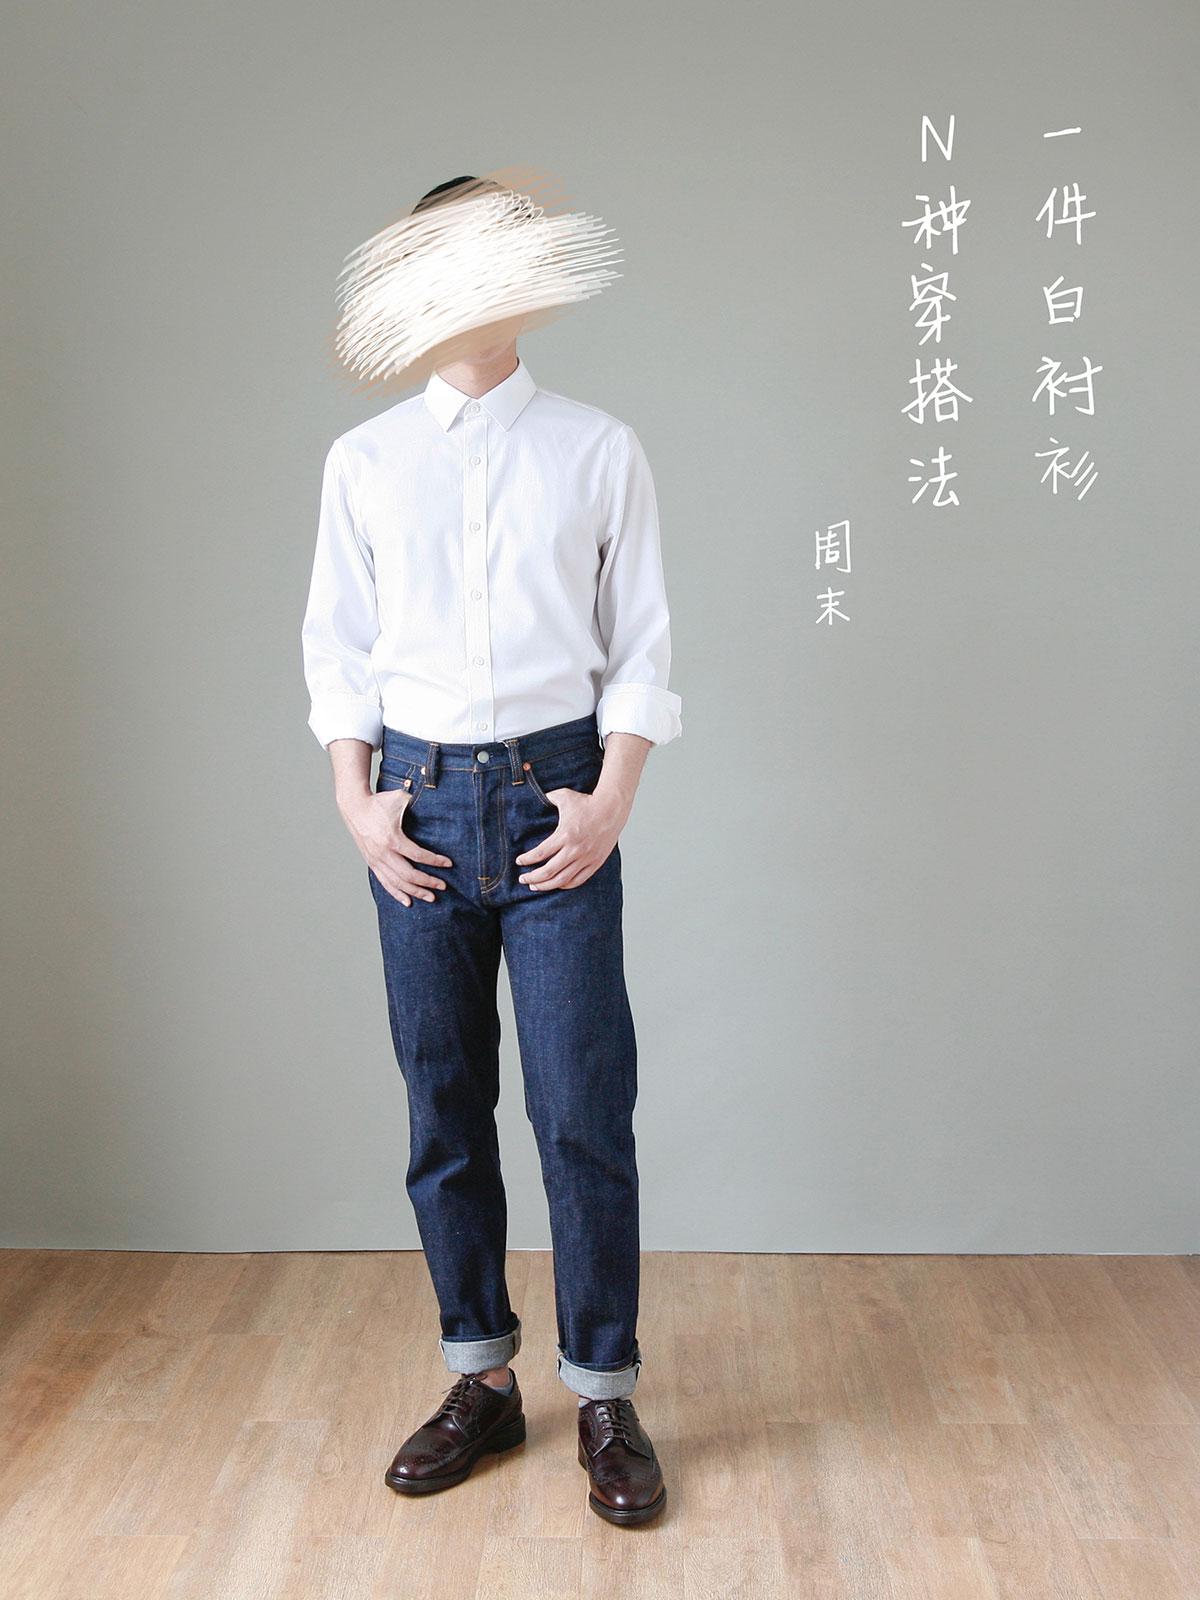 白衬衫男短袖韩版修身夏季选什么牌子好 同款好推荐